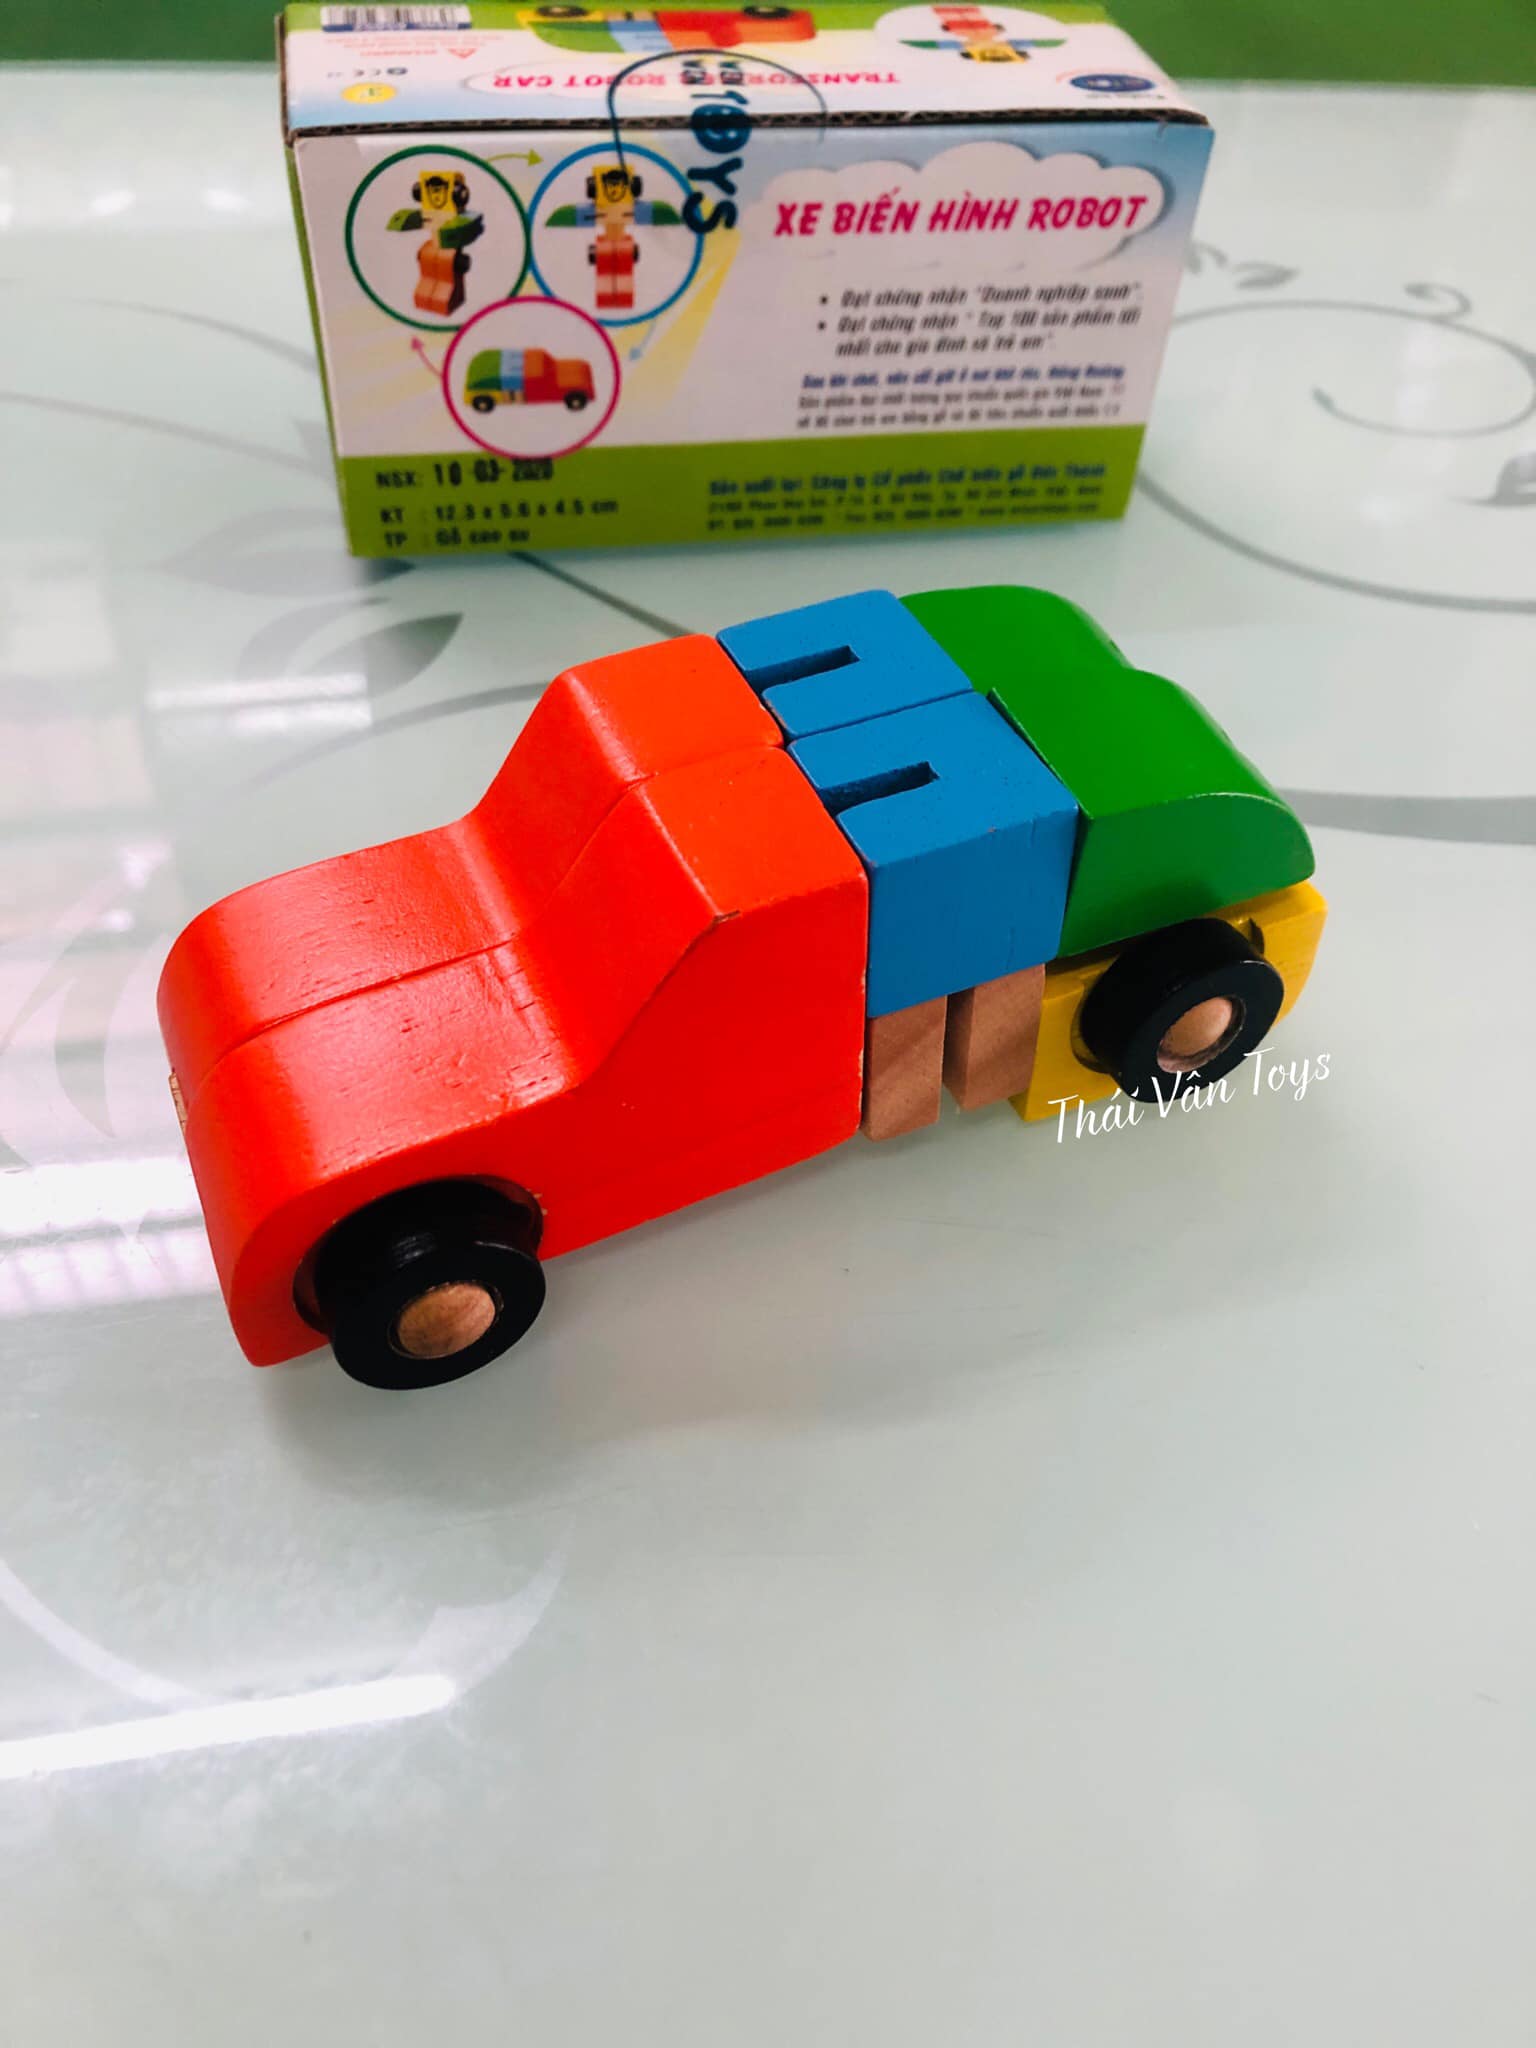 Đồ chơi xe gỗ biến hình robot - Đồ chơi gỗ Việt Nam